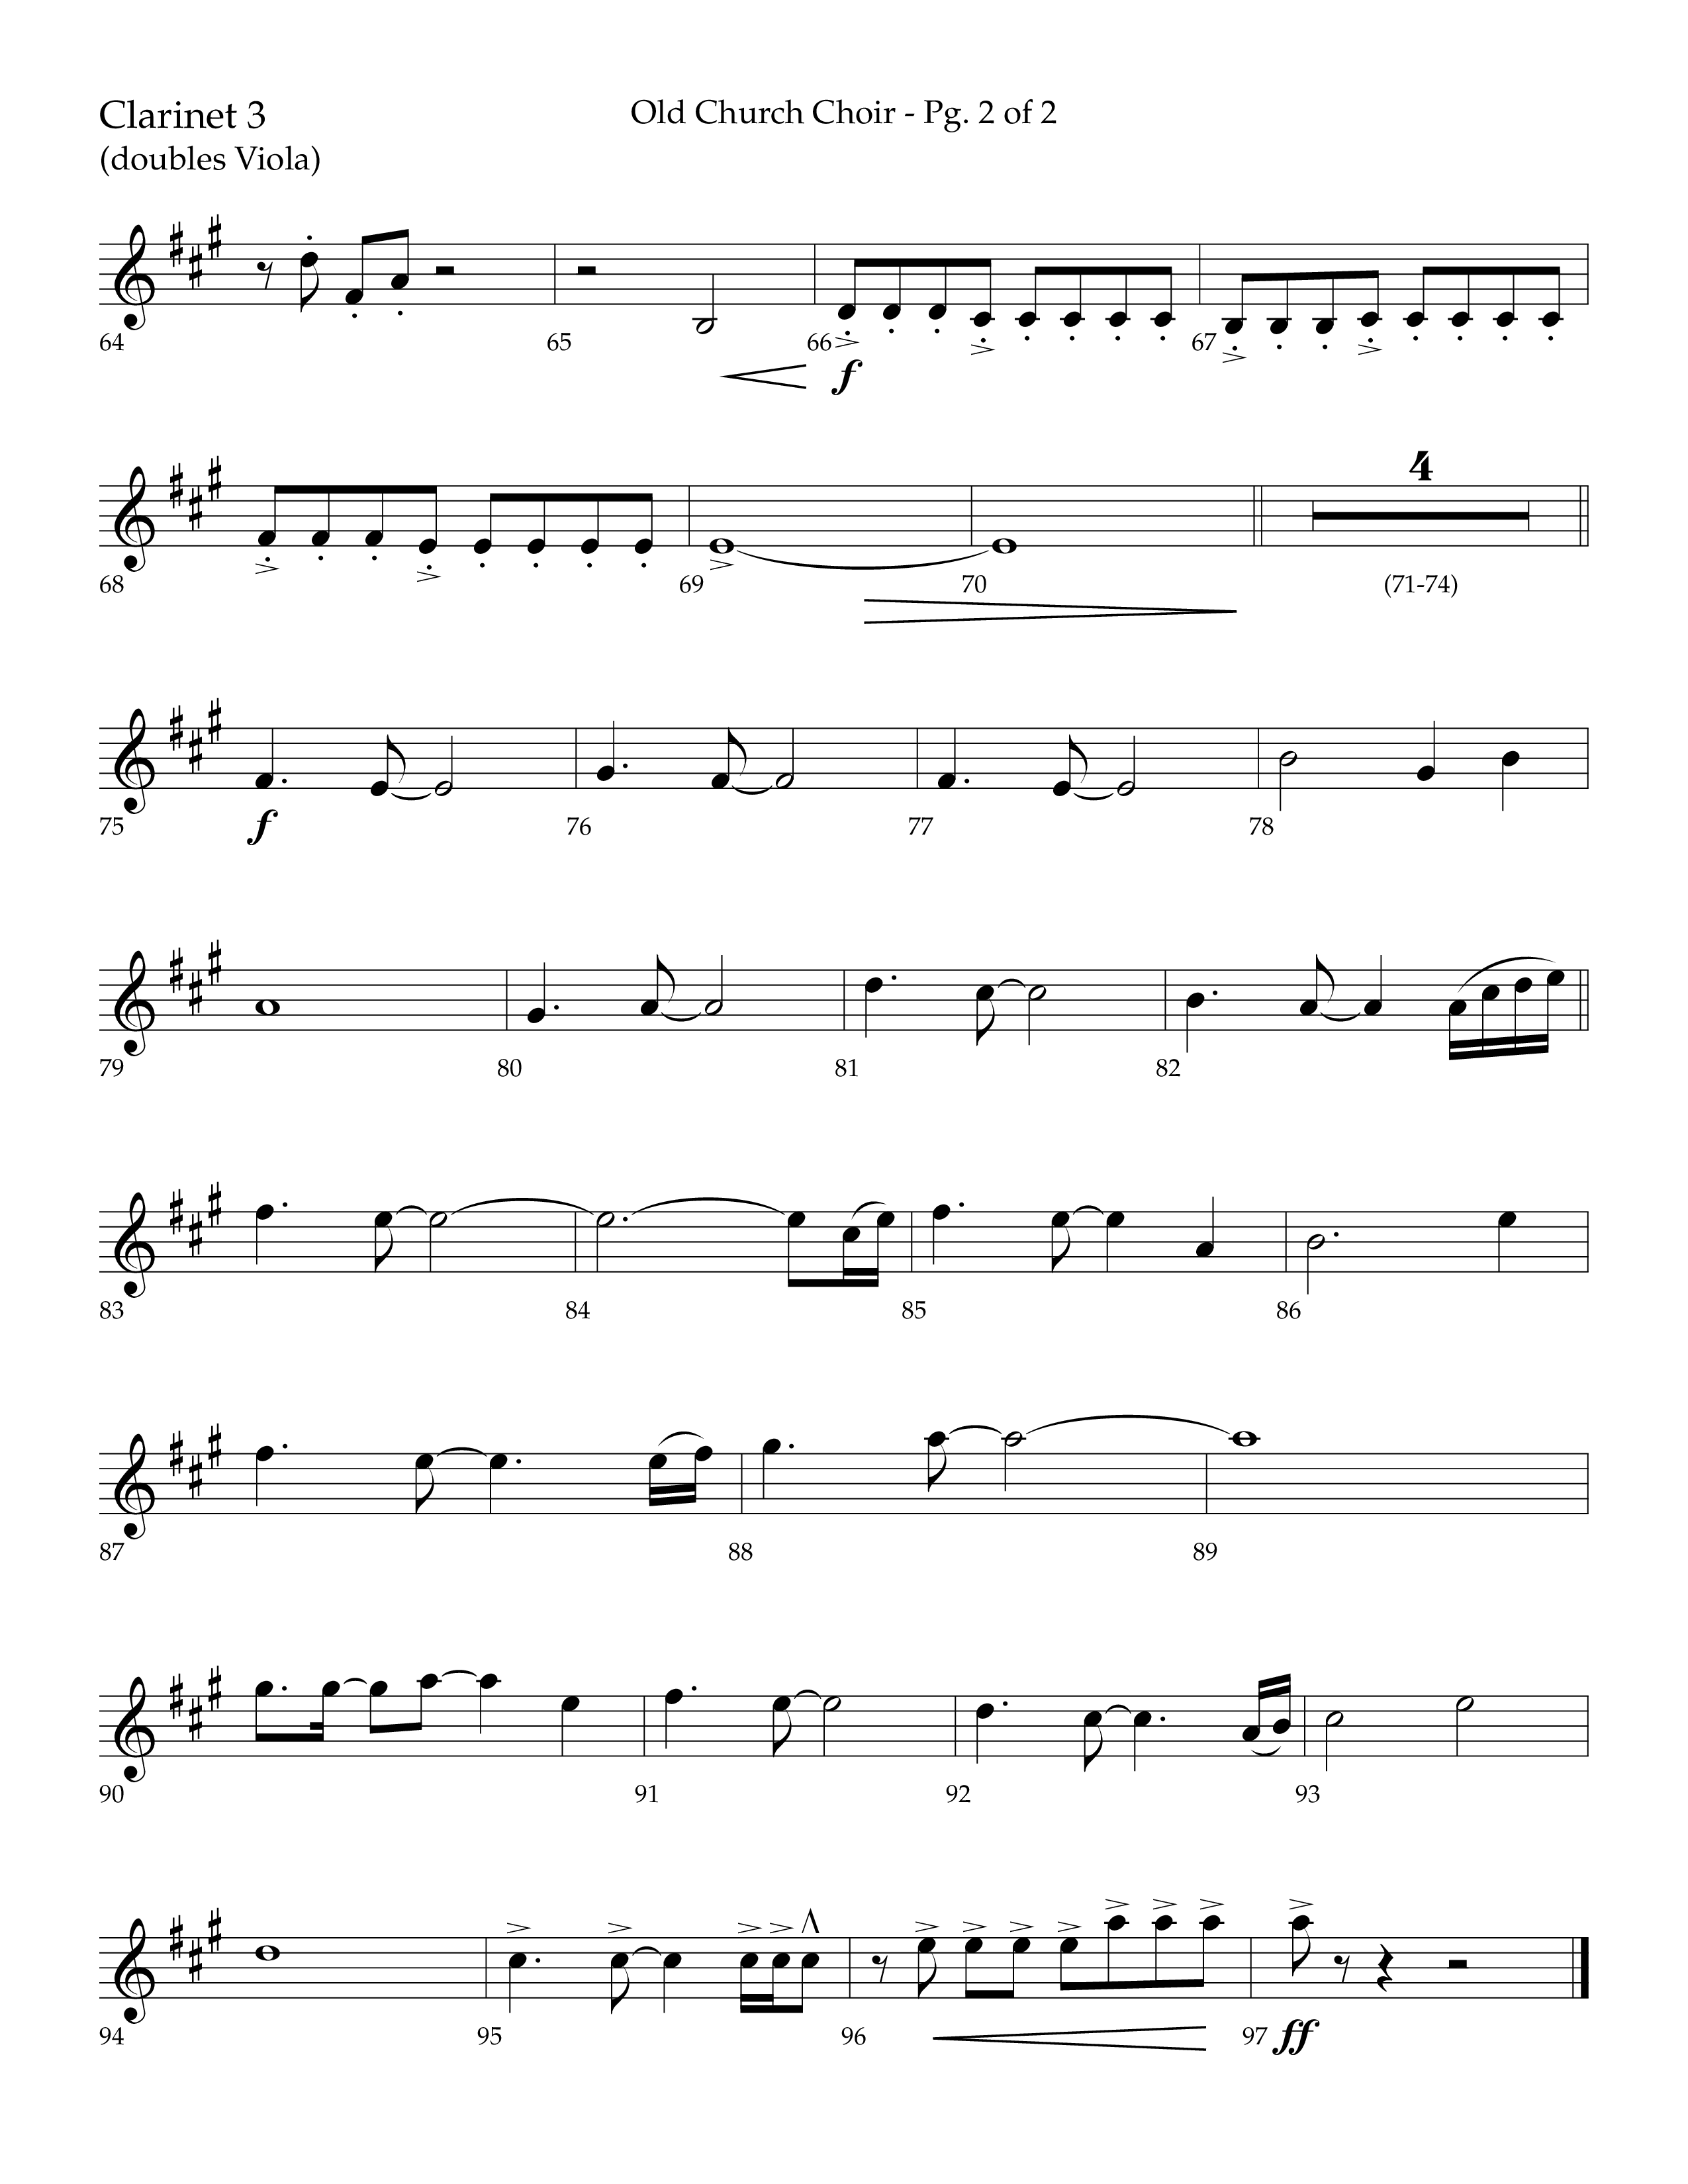 Old Church Choir (Choral Anthem SATB) Clarinet 3 (Lifeway Choral / Arr. Ken Barker / Arr. Craig Adams / Arr. Danny Zaloudik)